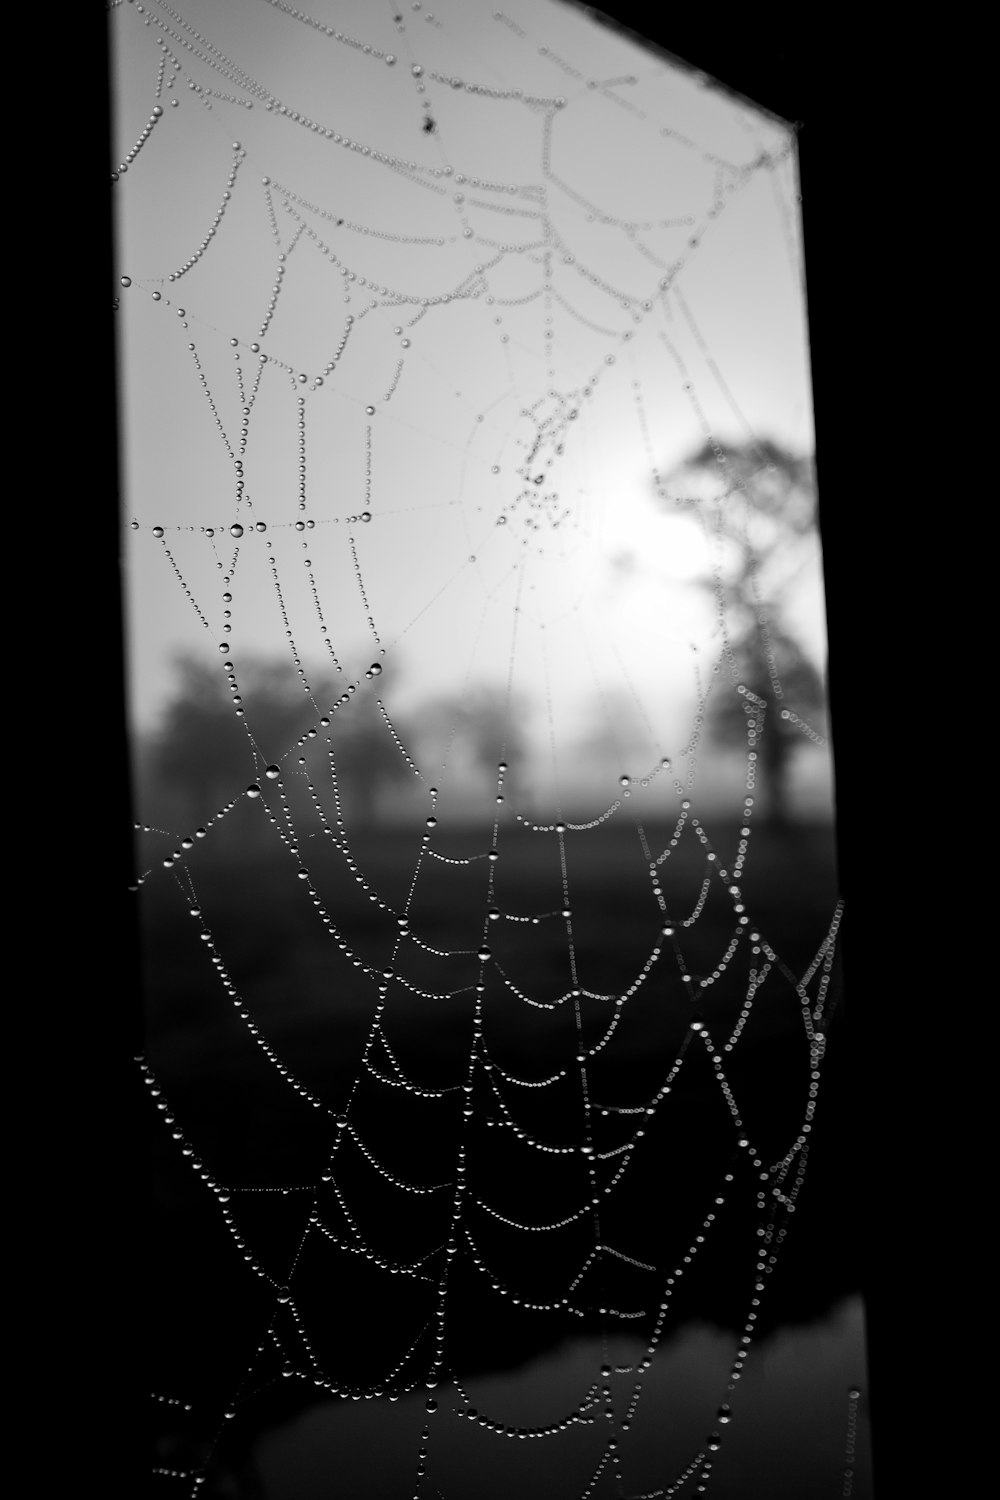 spider web 회색조 사진